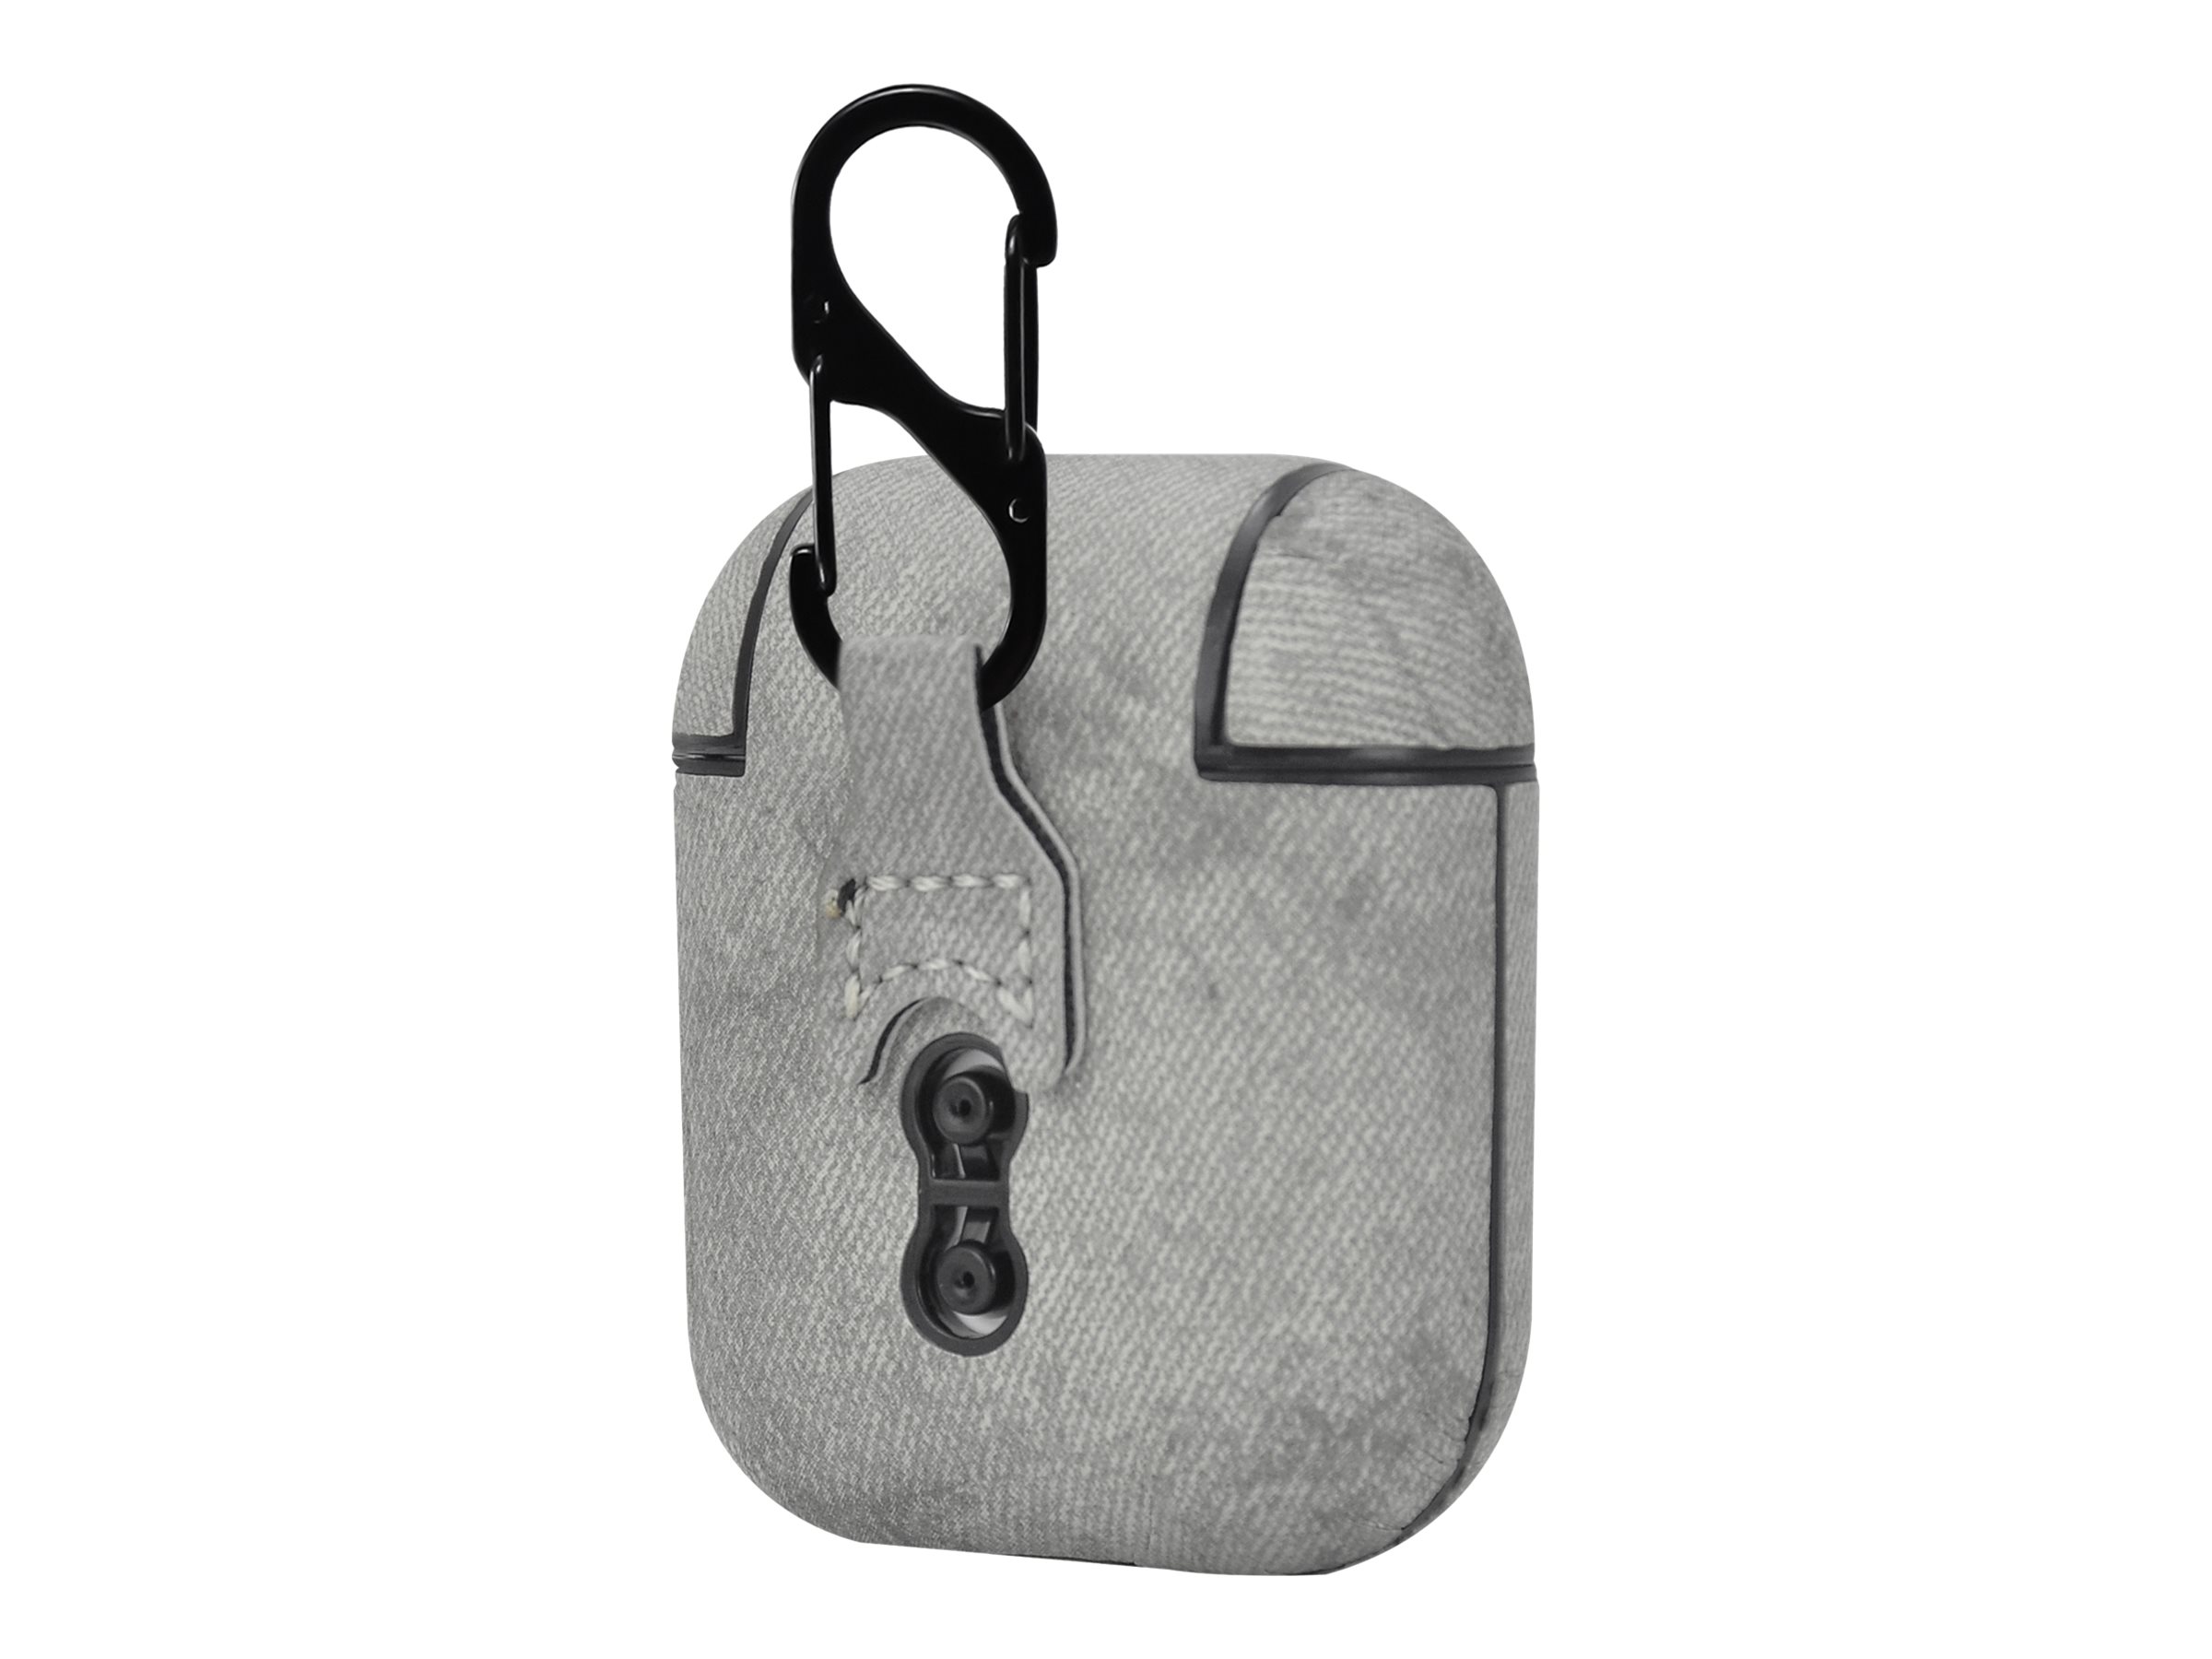 TerraTec Air Box - Tasche für Kopfhöhrer - Polycarbonat - Fabric Gray - für Apple AirPods (1. Generation, 2. Generation)